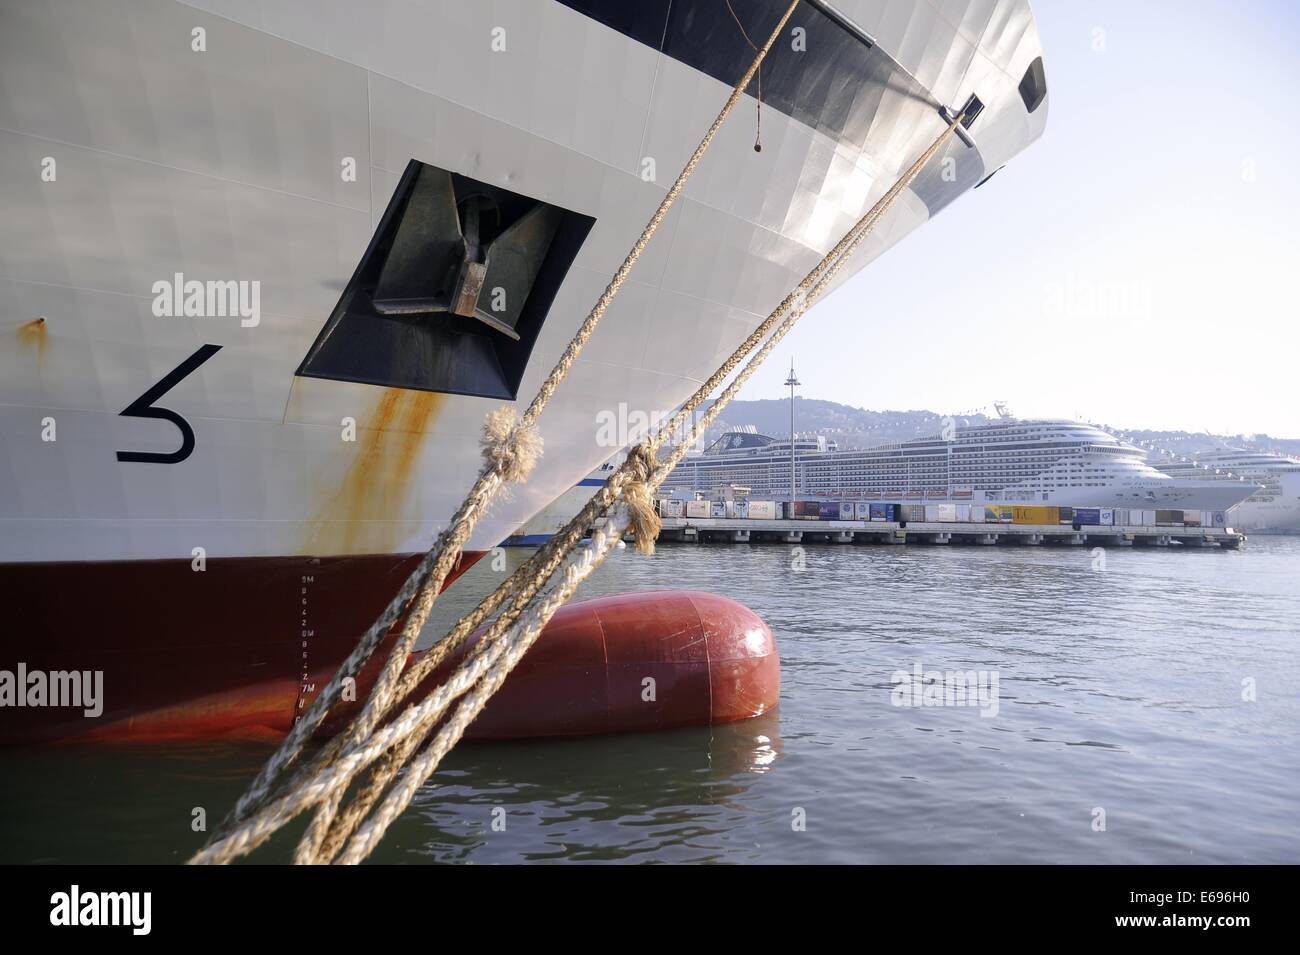 Genoa port (Italy), ferry at berth Stock Photo